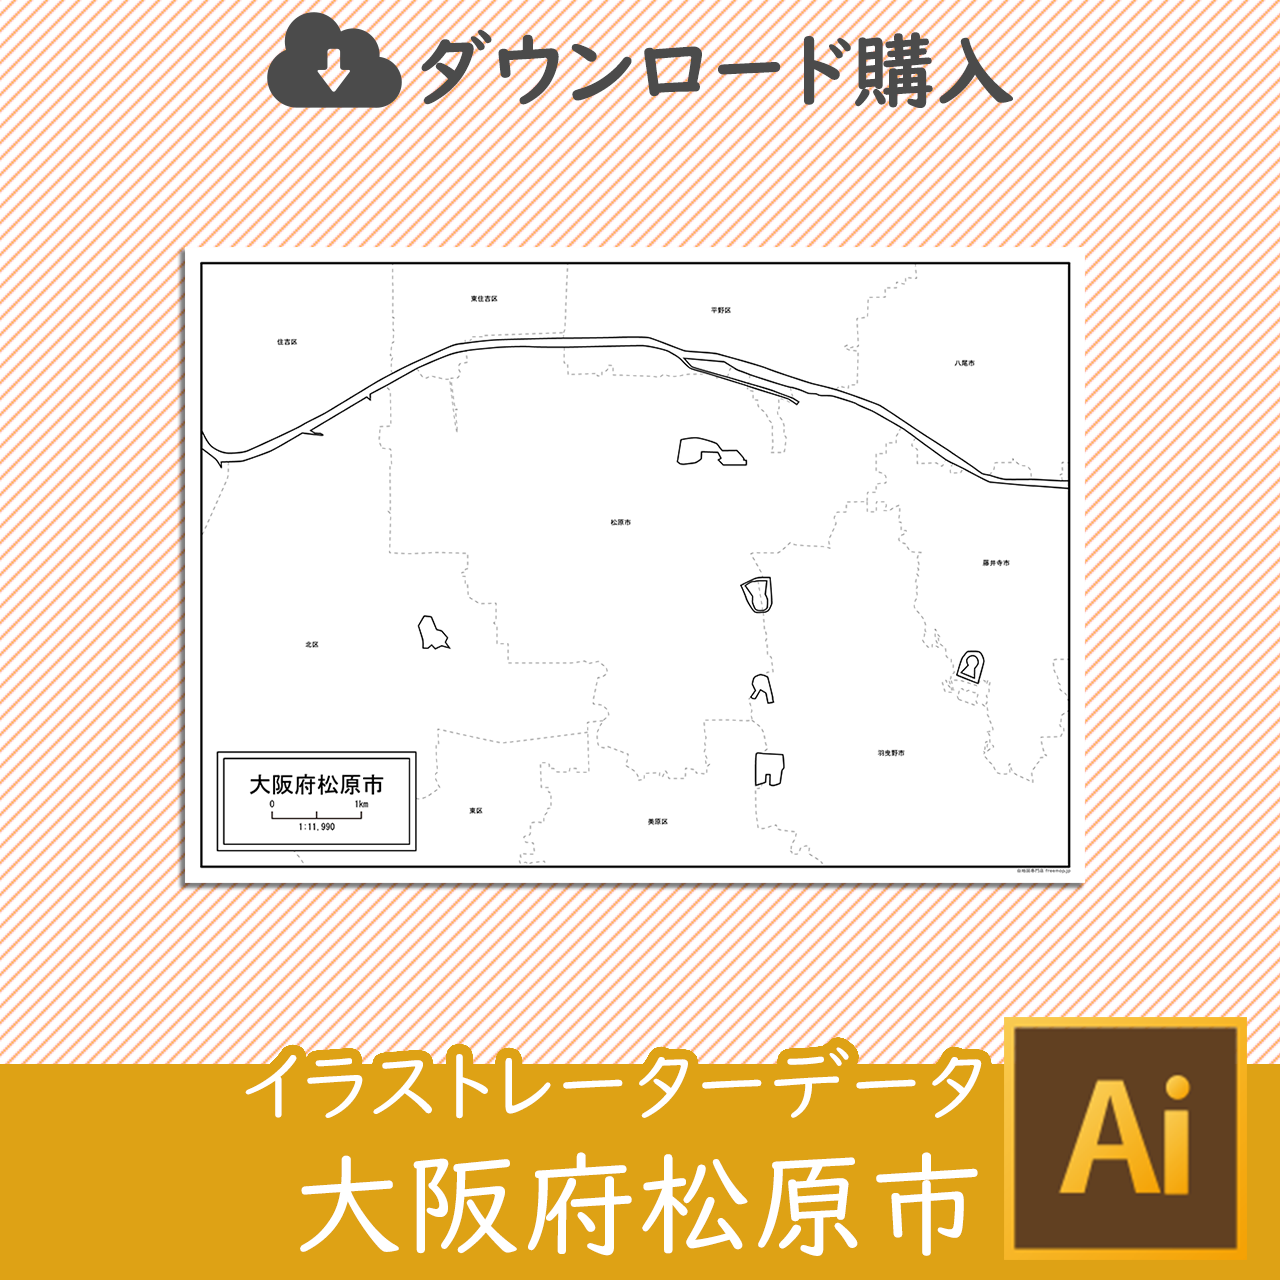 松原市のaiデータのサムネイル画像